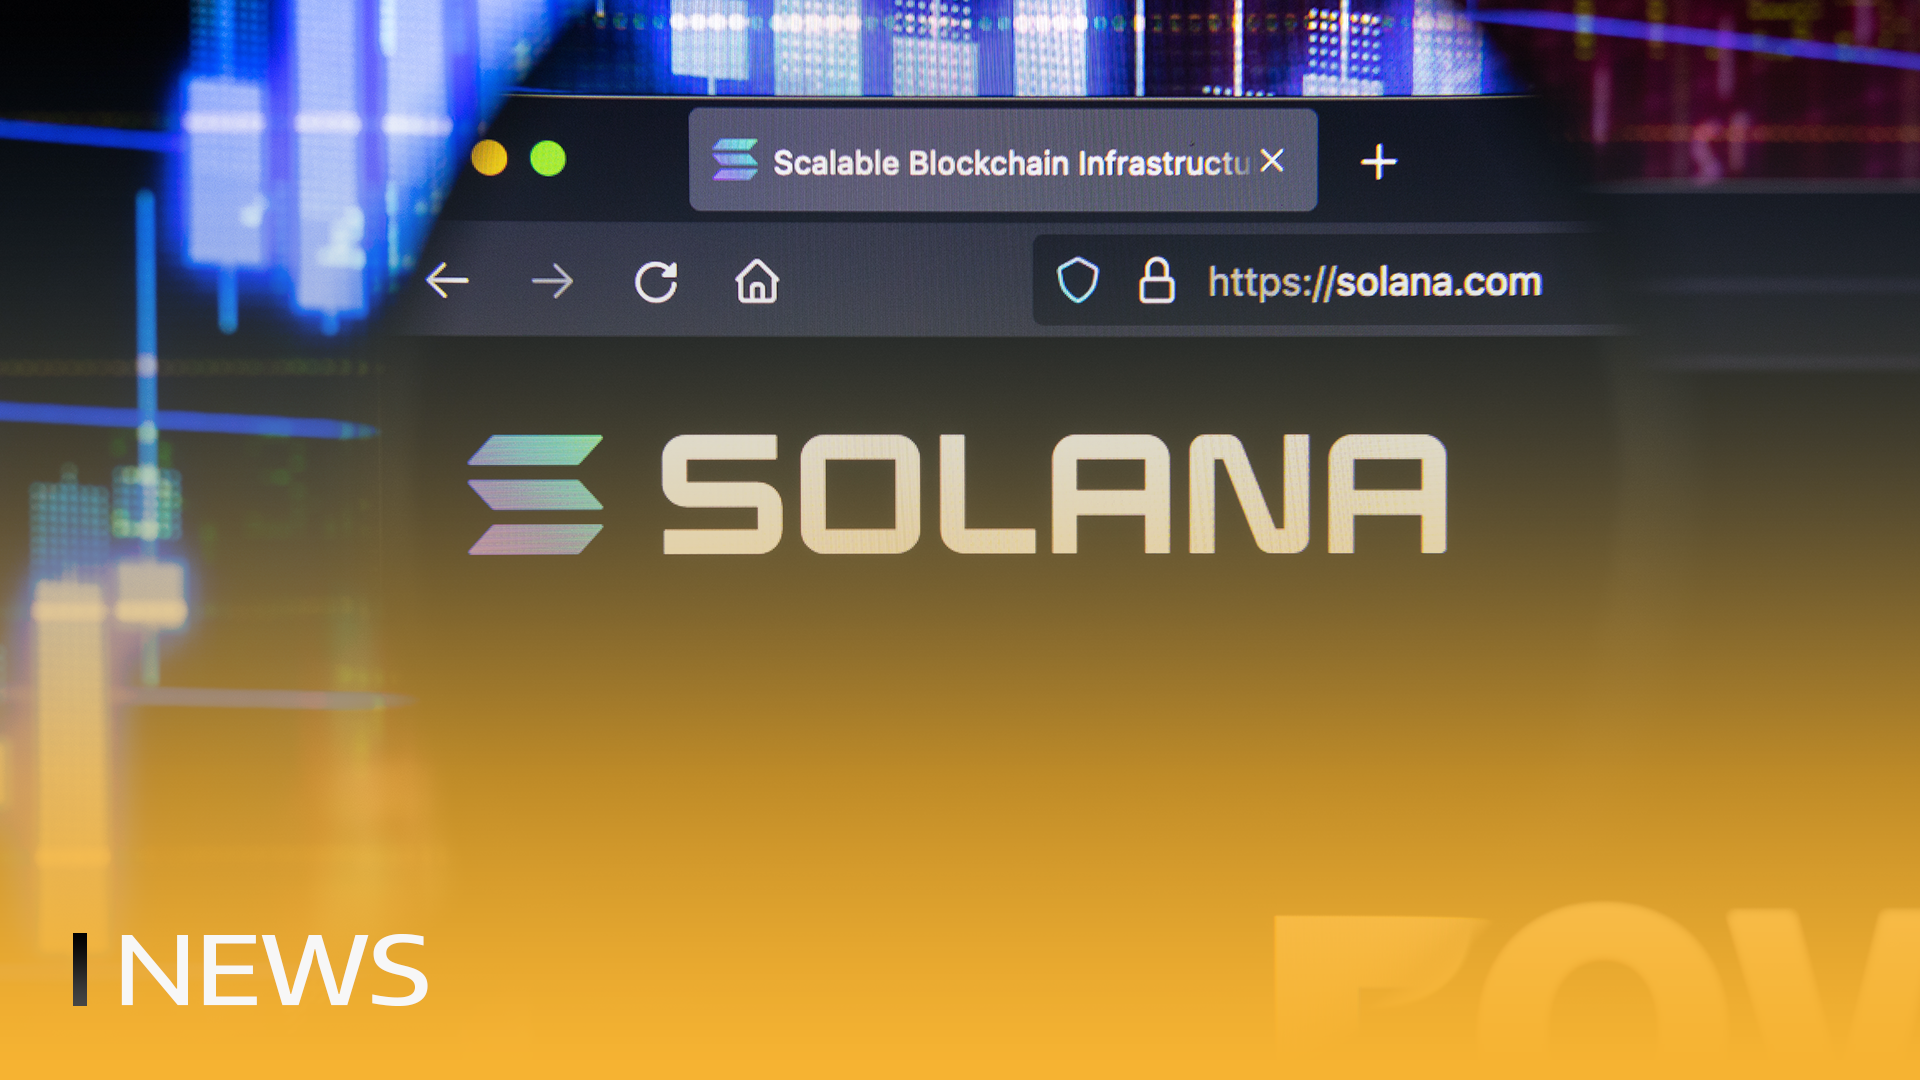 Zainteresowanie Solaną wzrasta powyżej Ethereum w Google